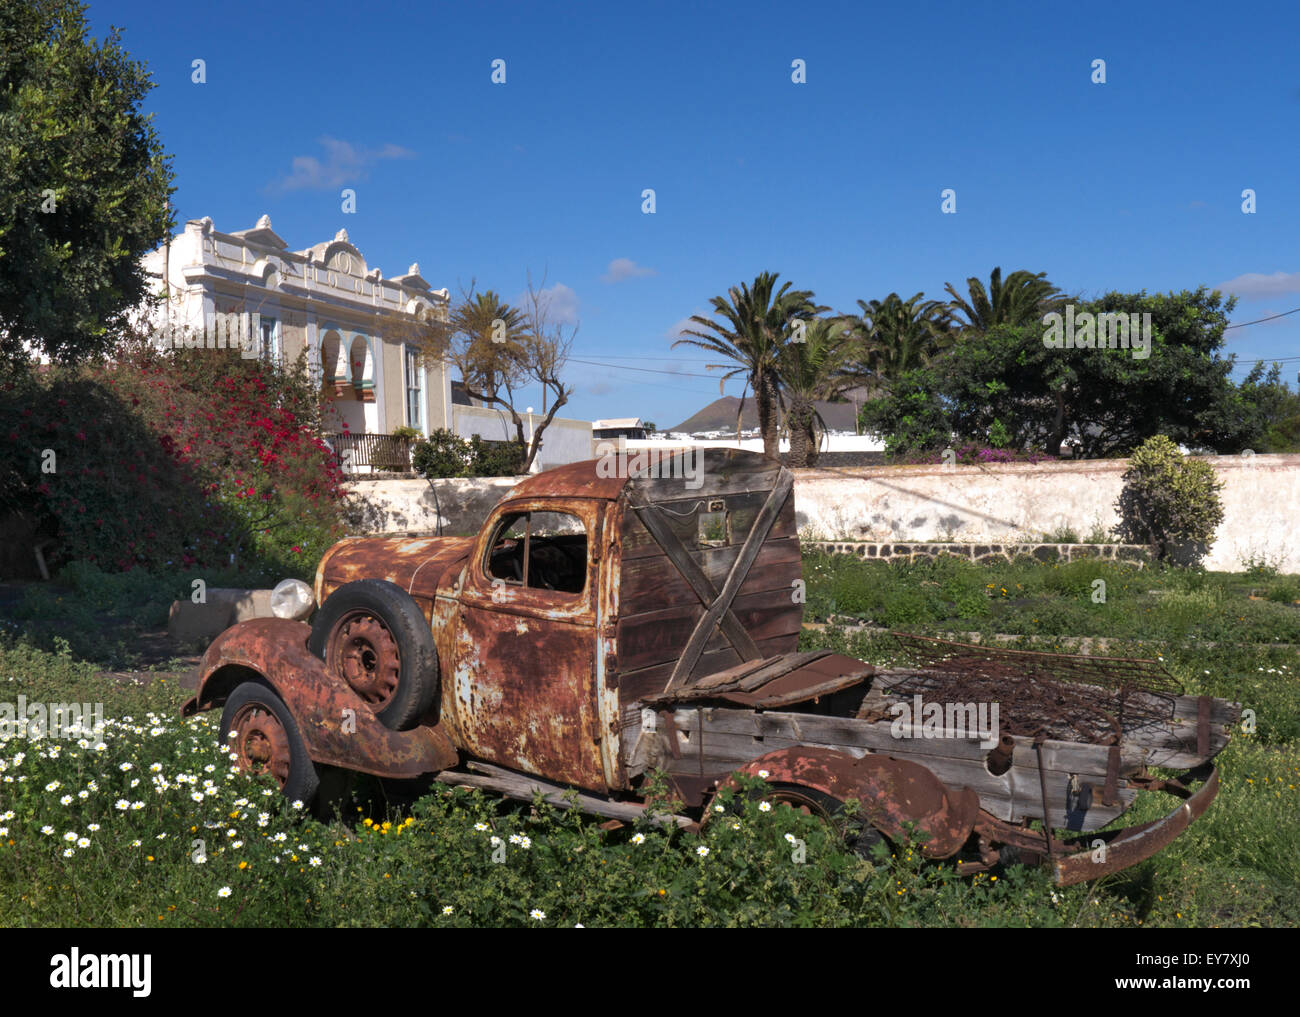 La rouille vieux pick up Truck constitue un élément attrayant dans un jardin de Lanzarote avec l'ancienne ferme finca derrière Canaries Espagne Banque D'Images